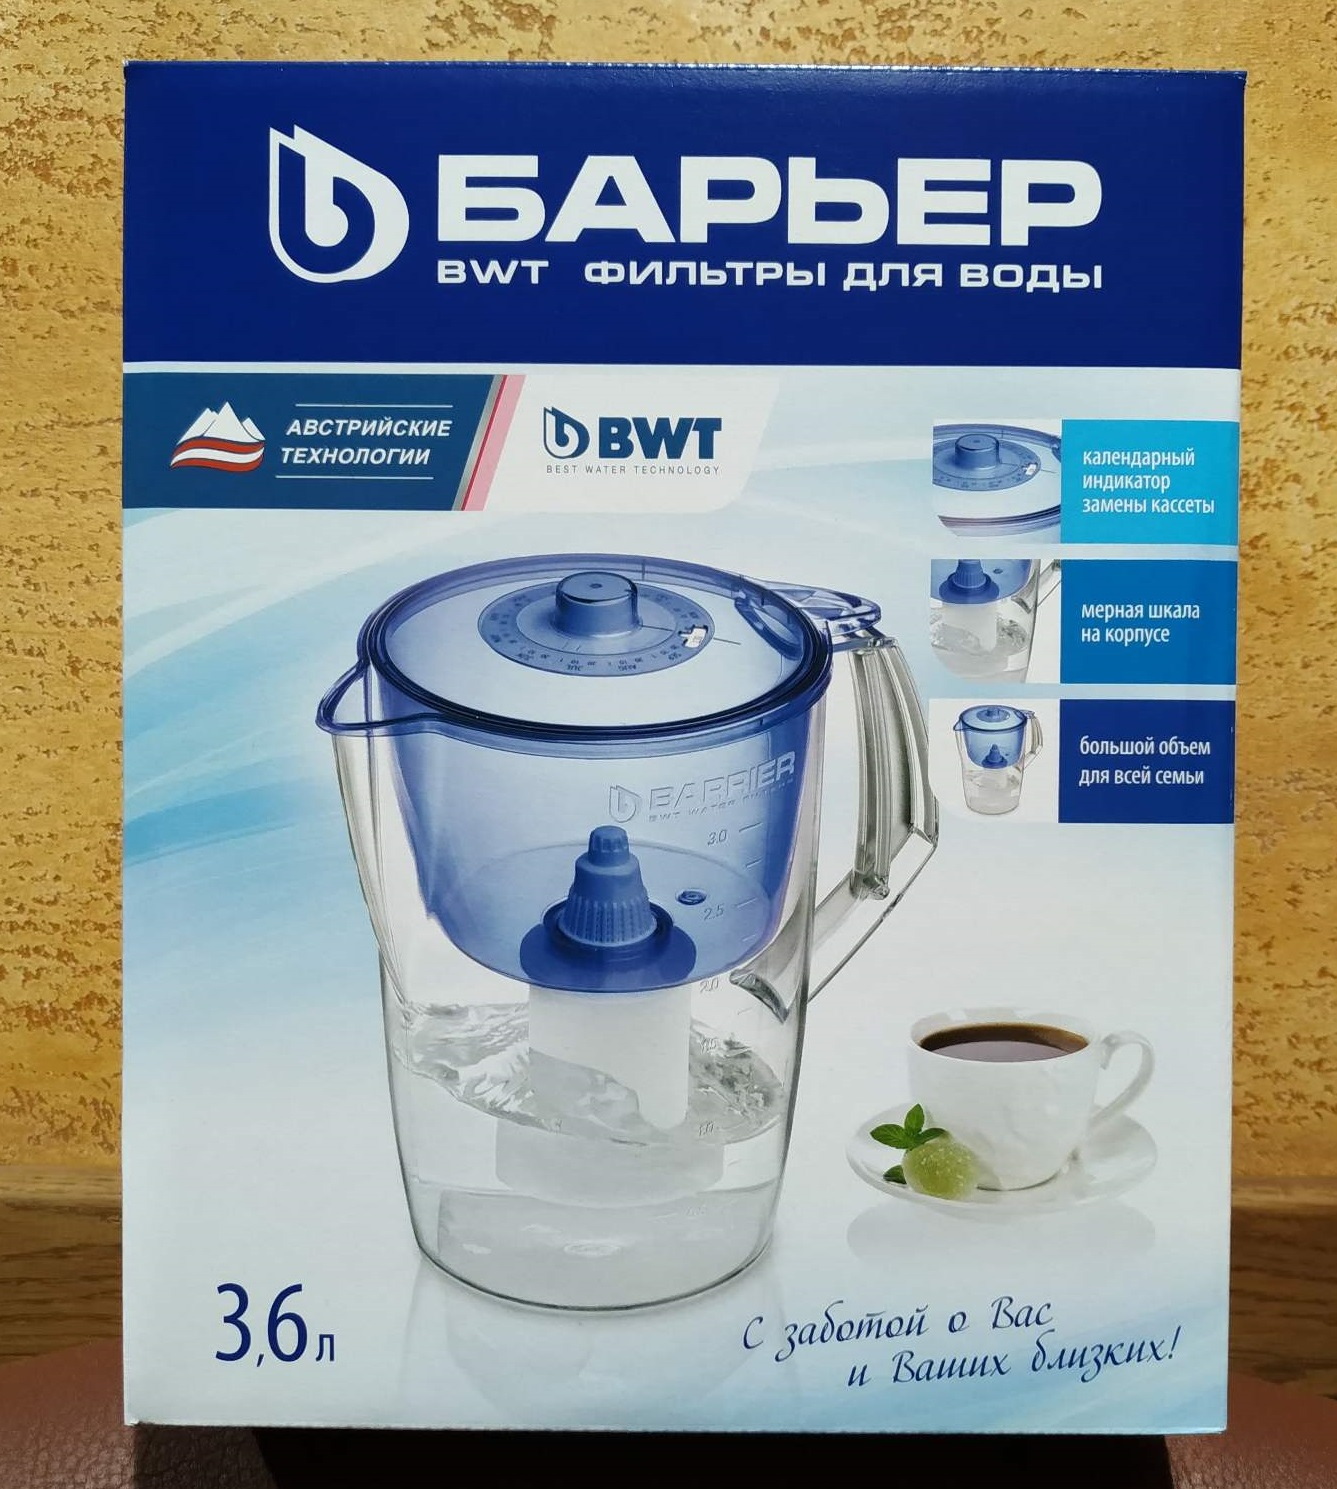 БАРЬЕР Норма (3,6 литра) - бытовой фильтр кувшин для очистки воды! Очищенная питьевая вода всегда!